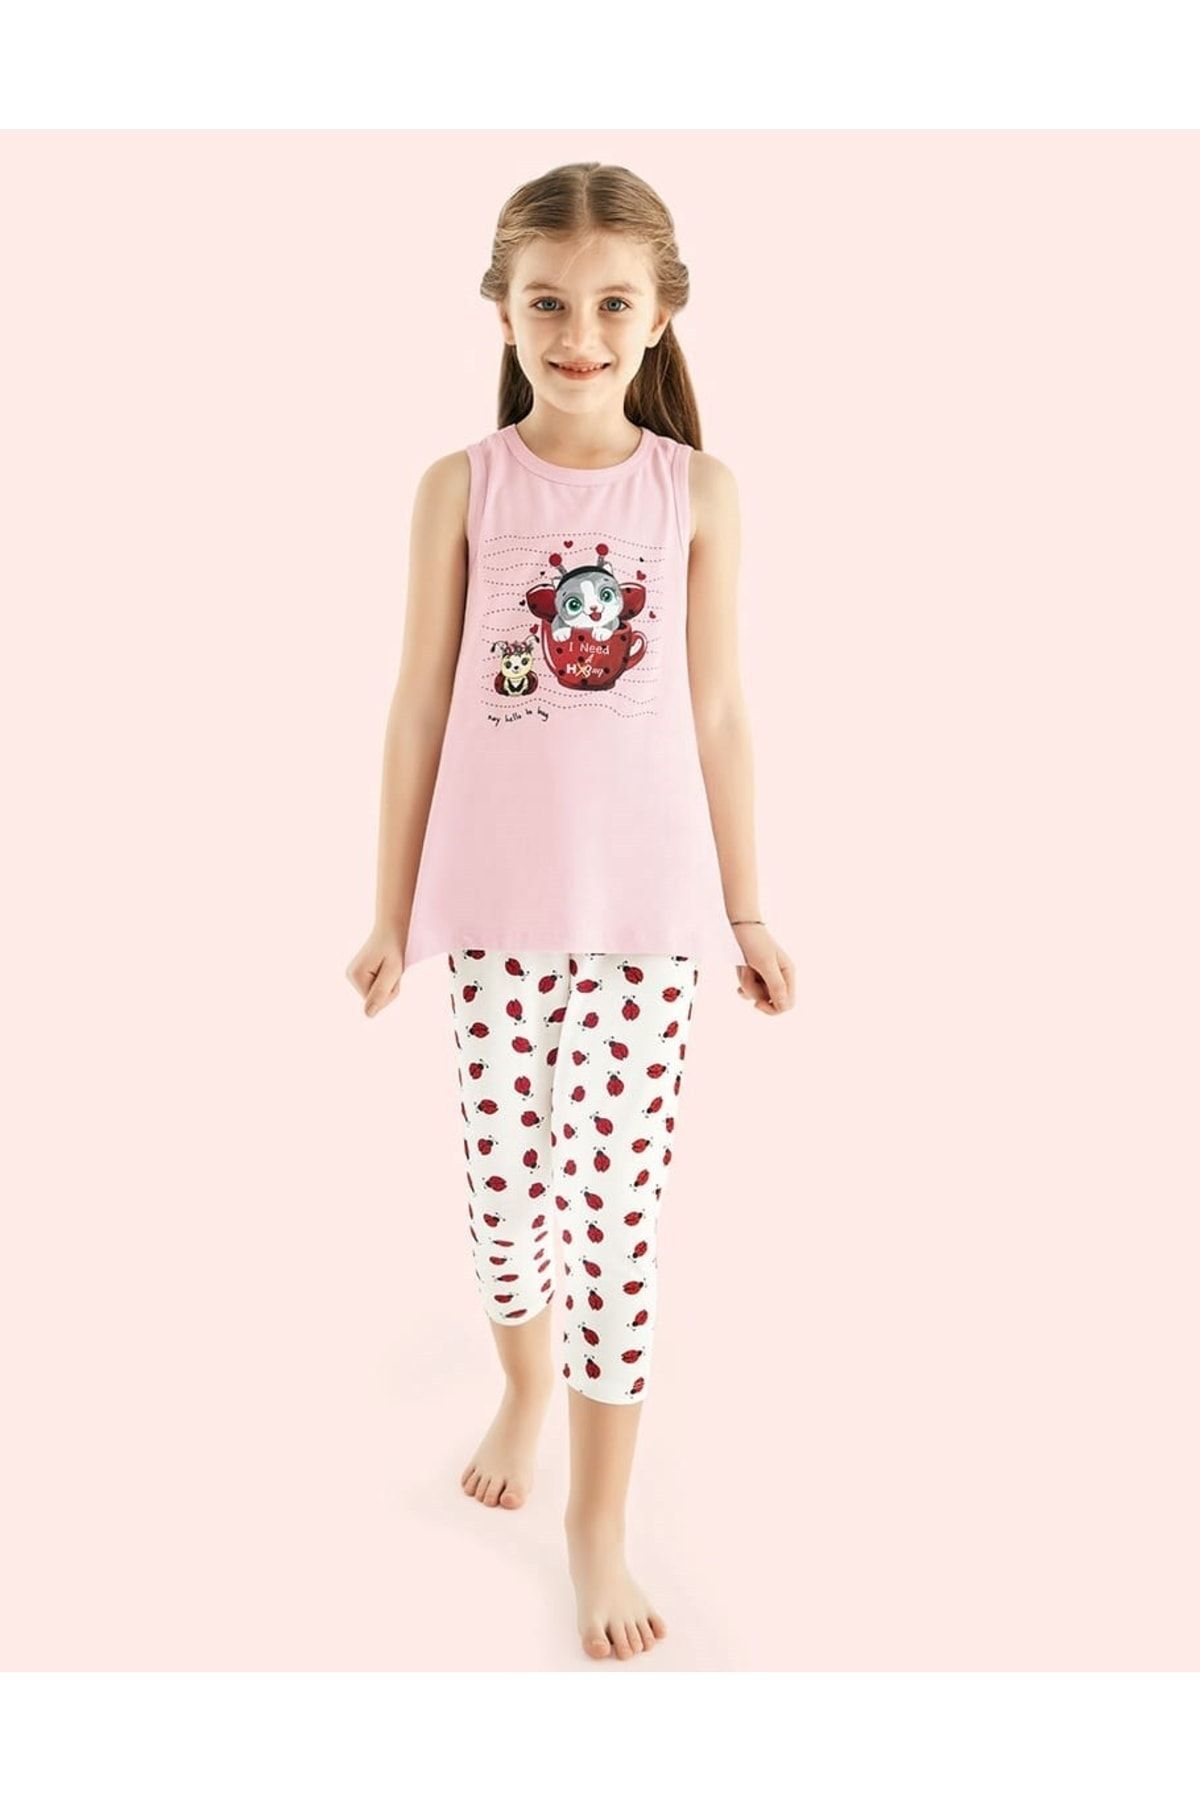 Donella Uğur Böceği Baskılı Kız Çocuk Pijama Takımı - 10111